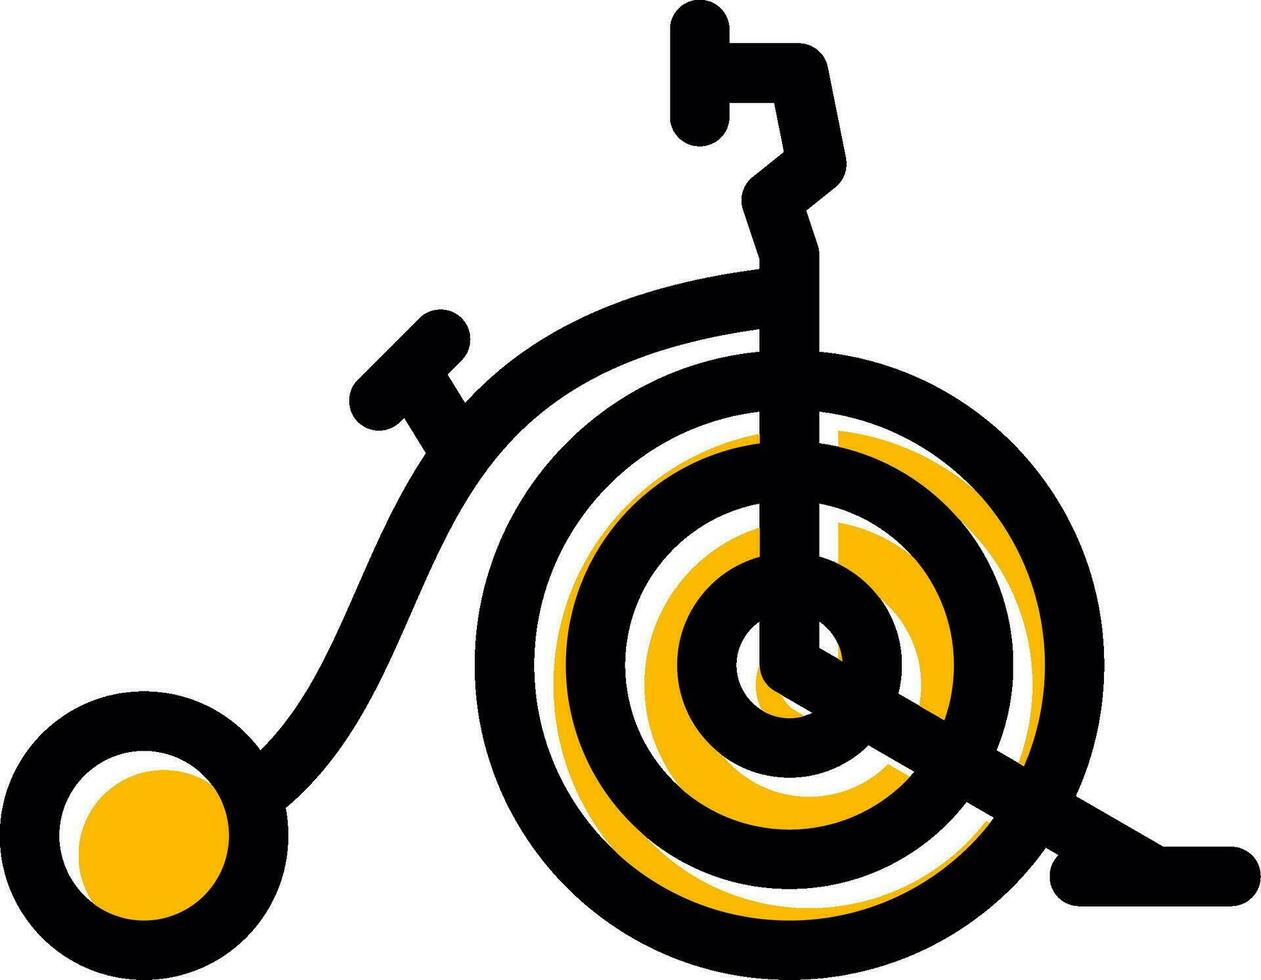 Circus Bike Creative Icon Design vector